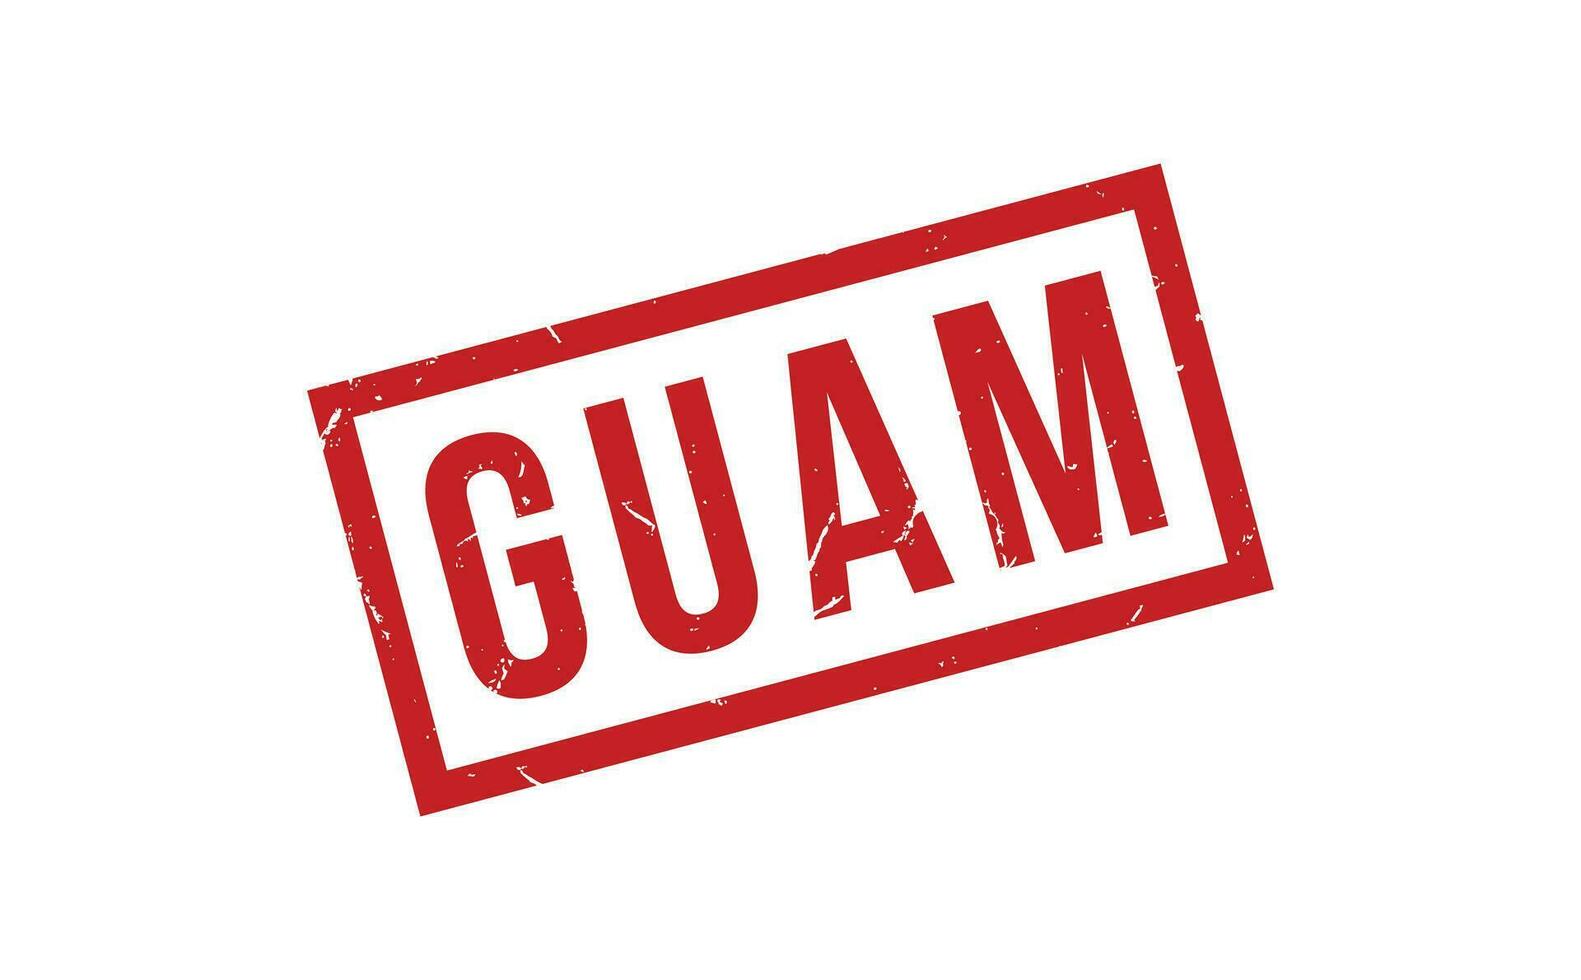 Guam caoutchouc timbre joint vecteur